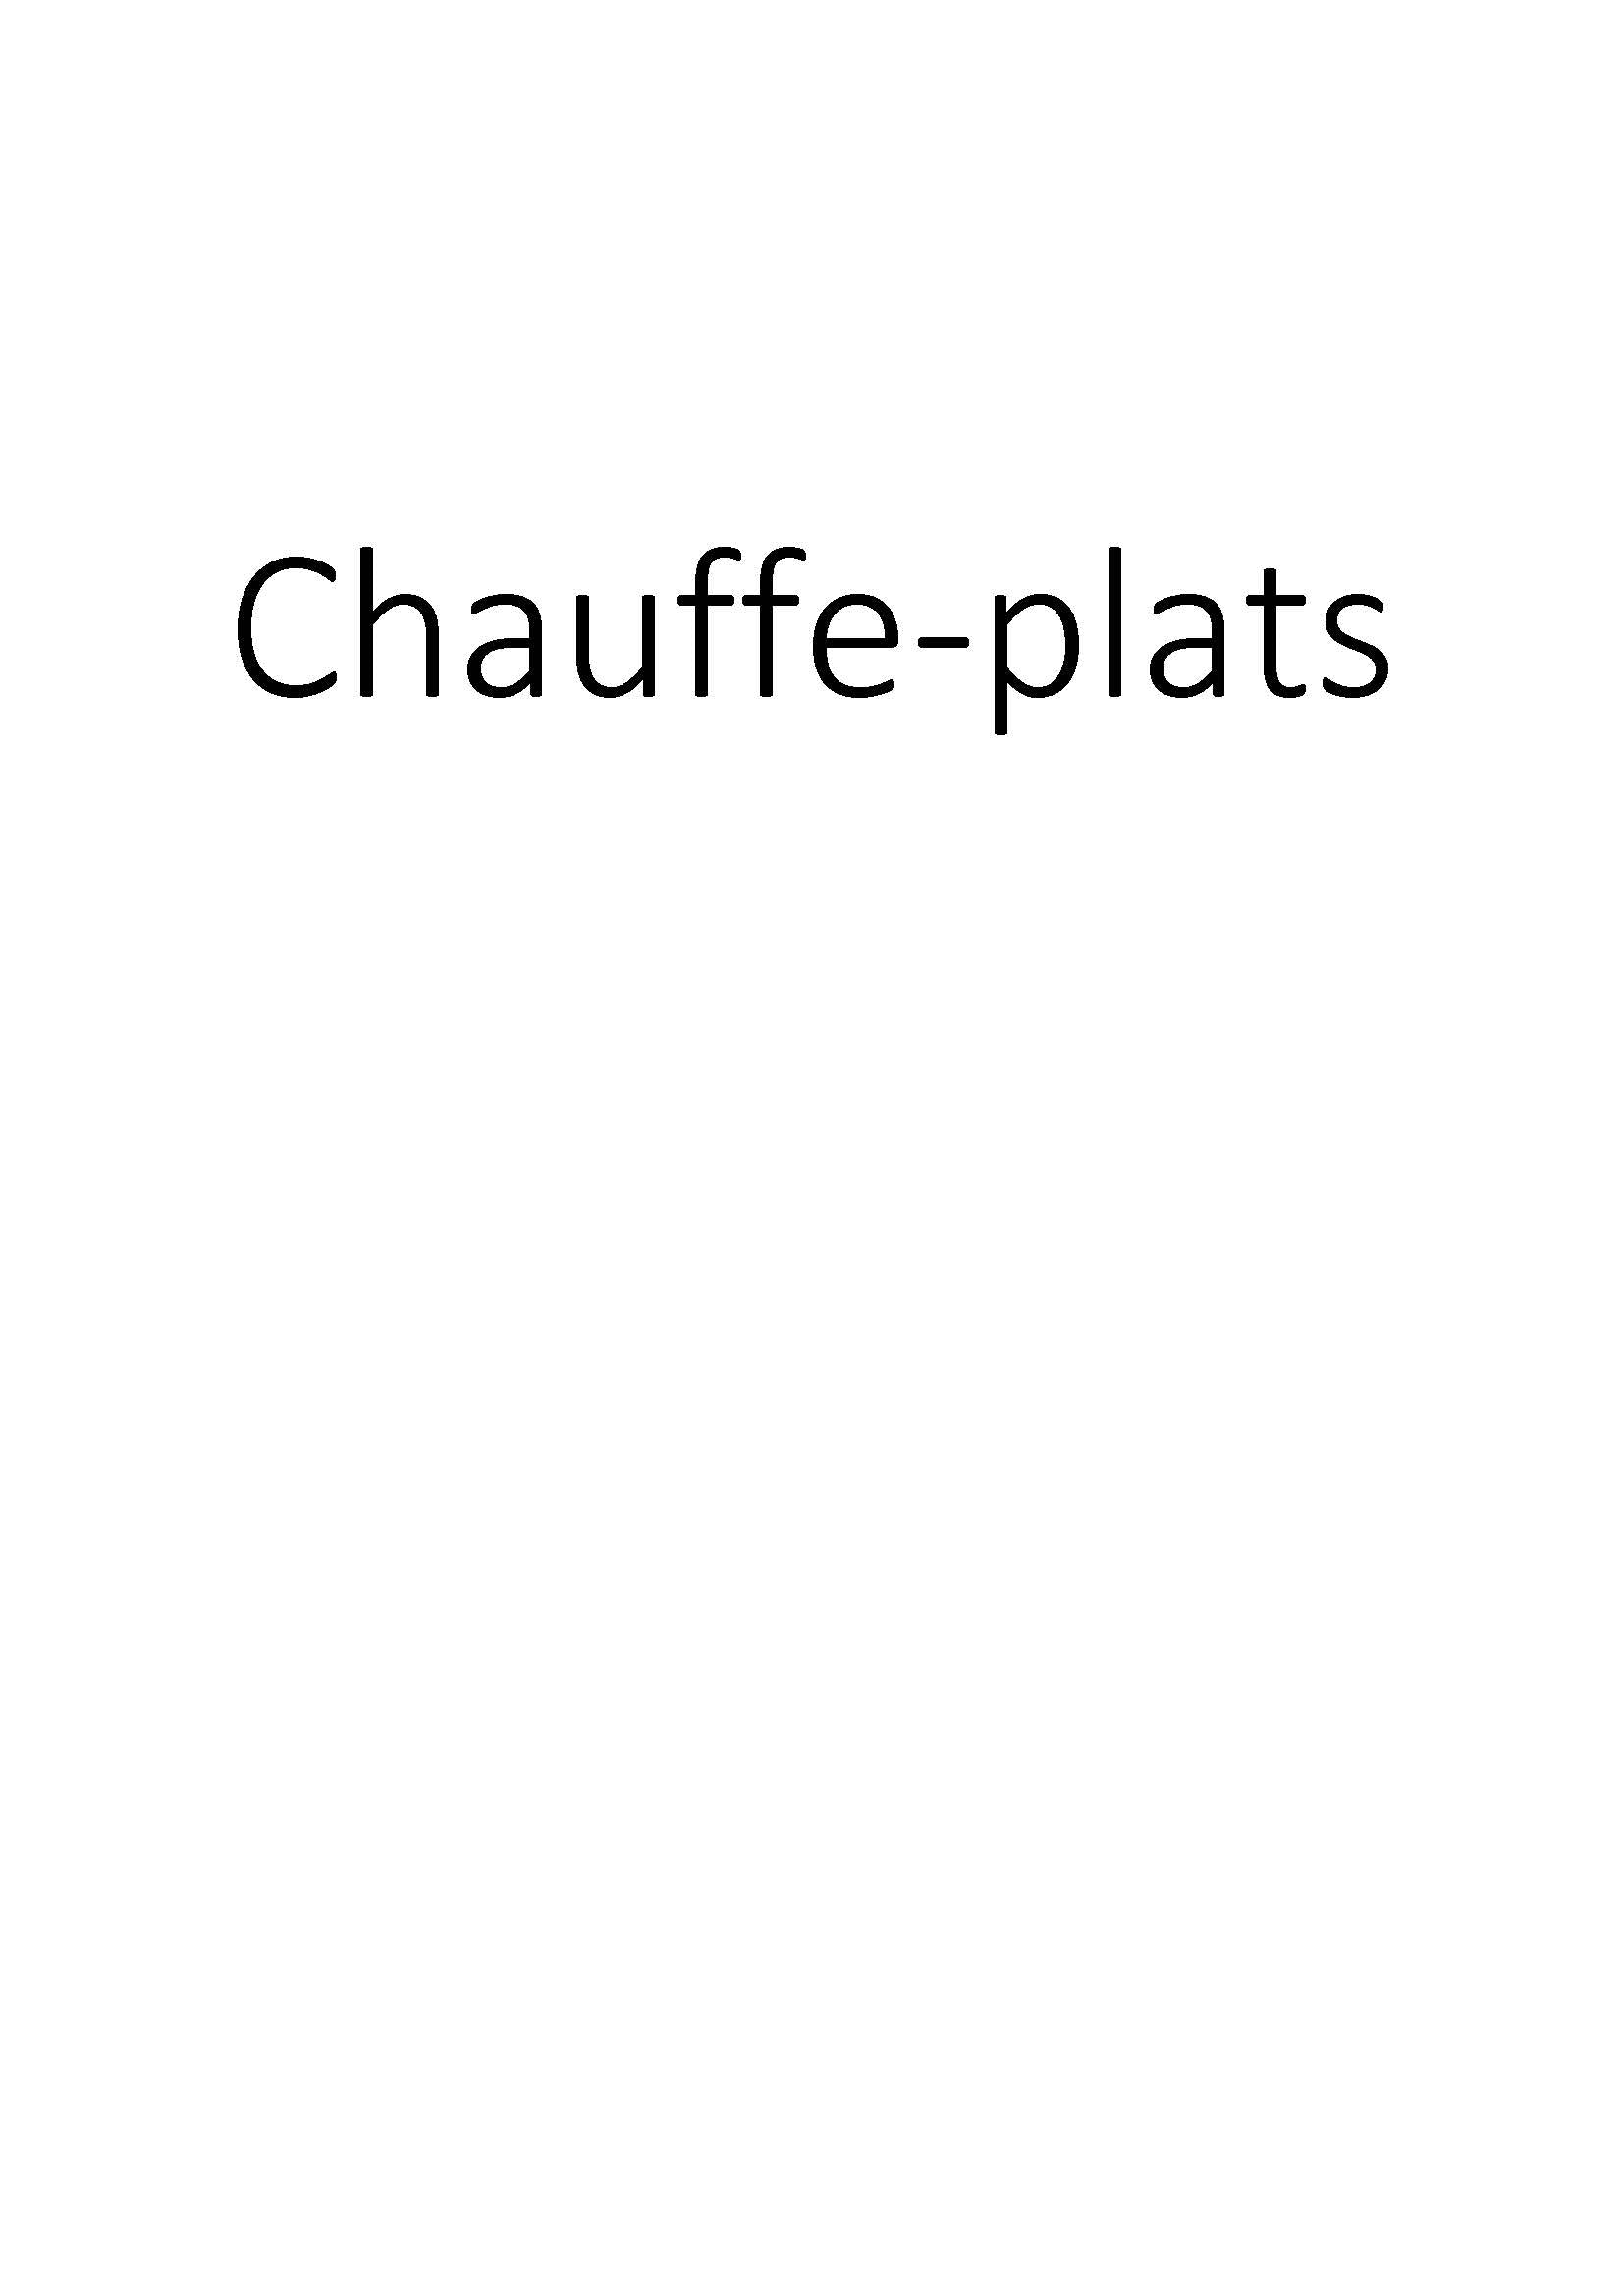 Chauffe-plats clicktofournisseur.com